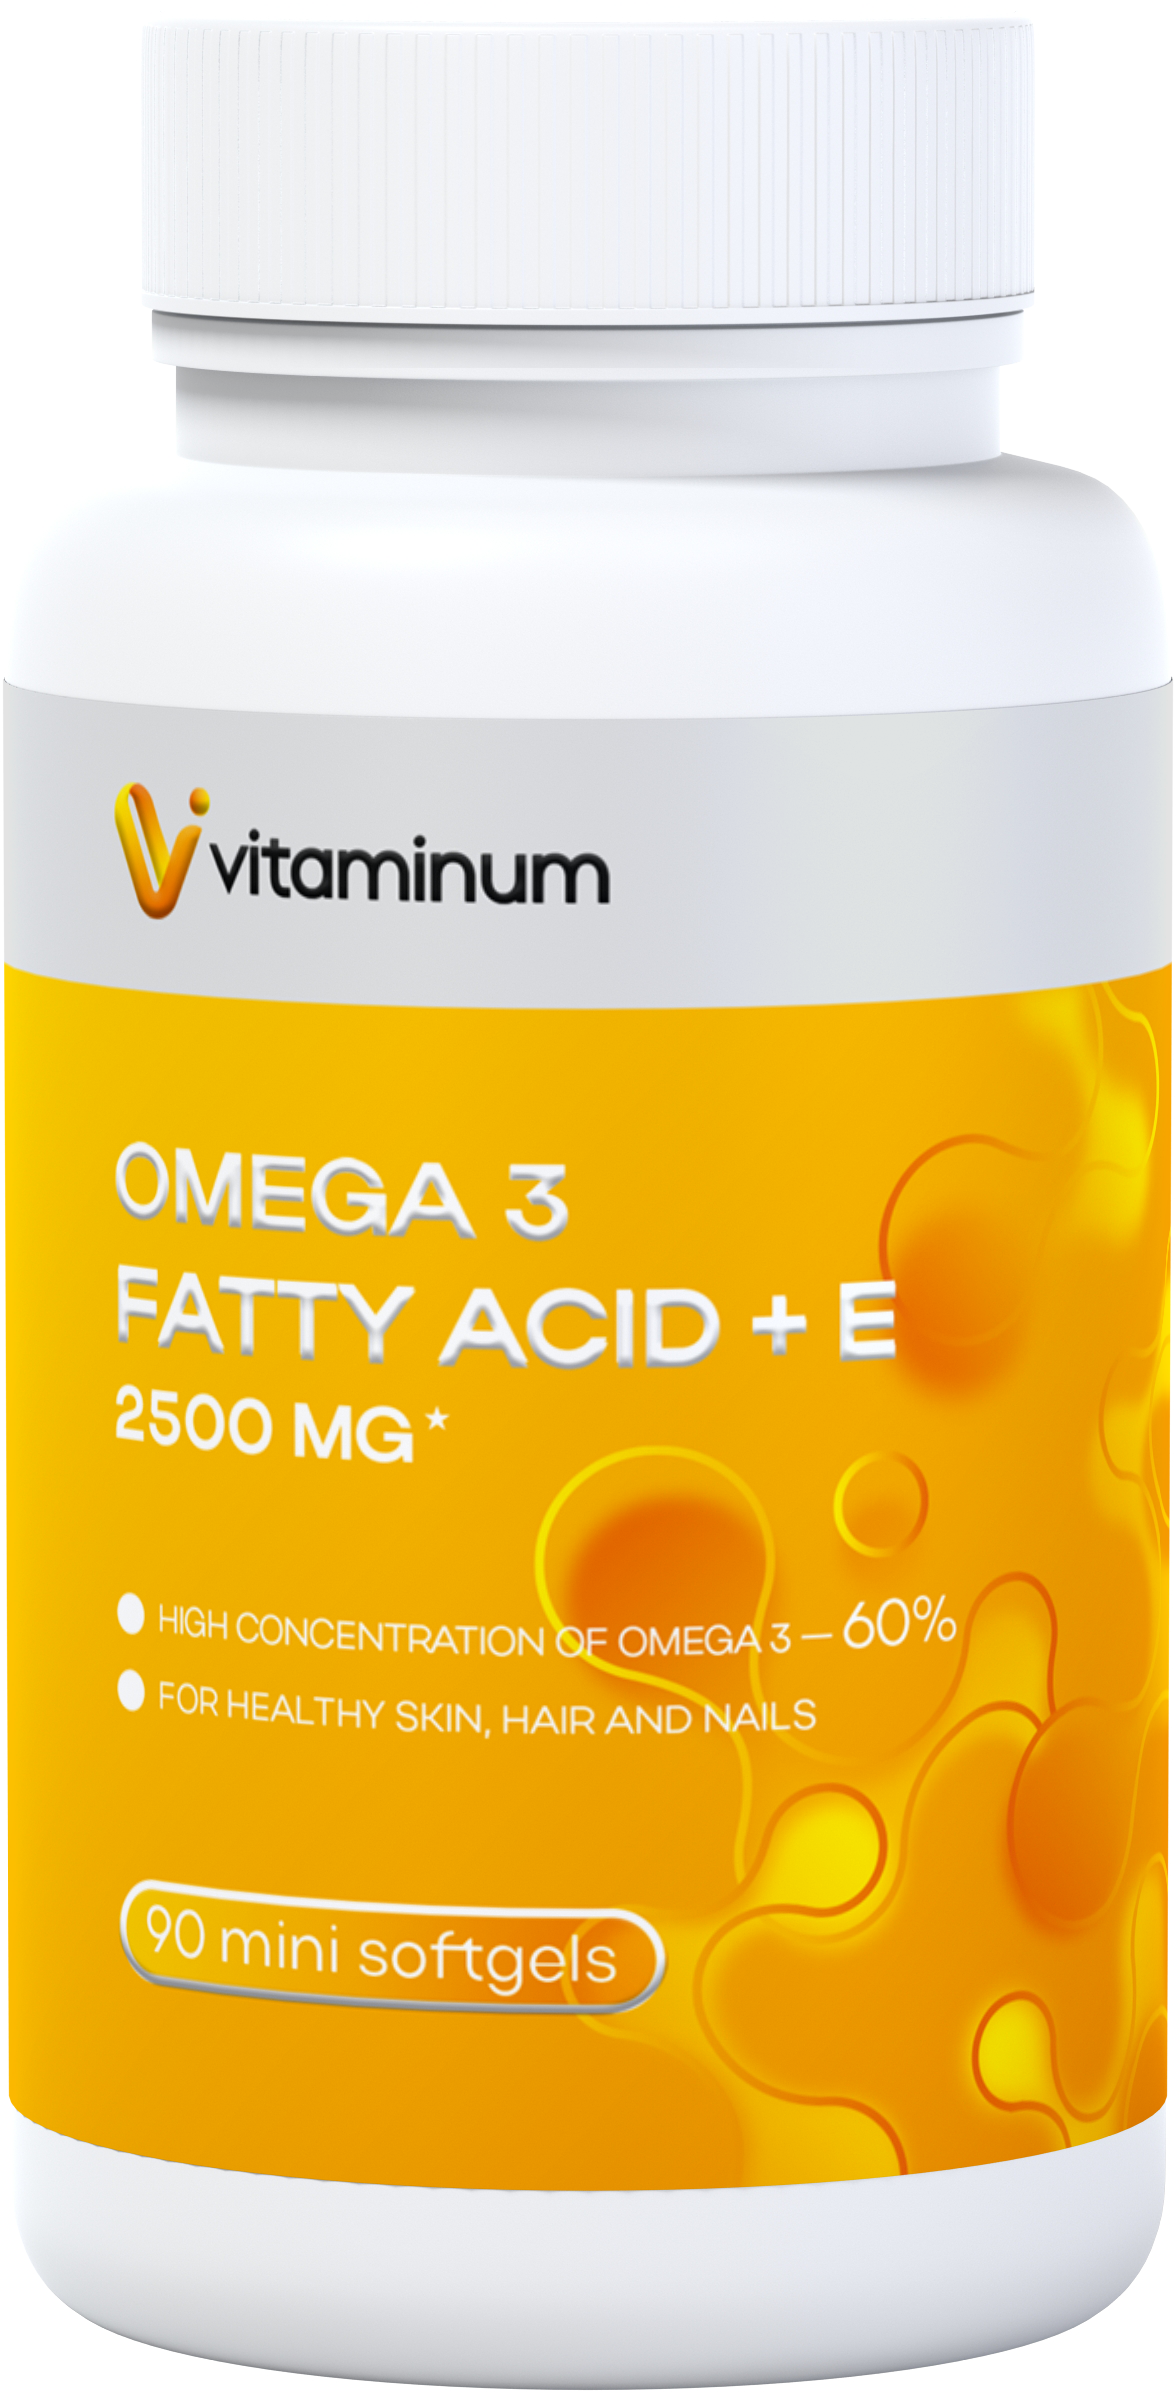  Vitaminum ОМЕГА 3 60% + витамин Е (2500 MG*) 90 капсул 700 мг  в Урюпинске